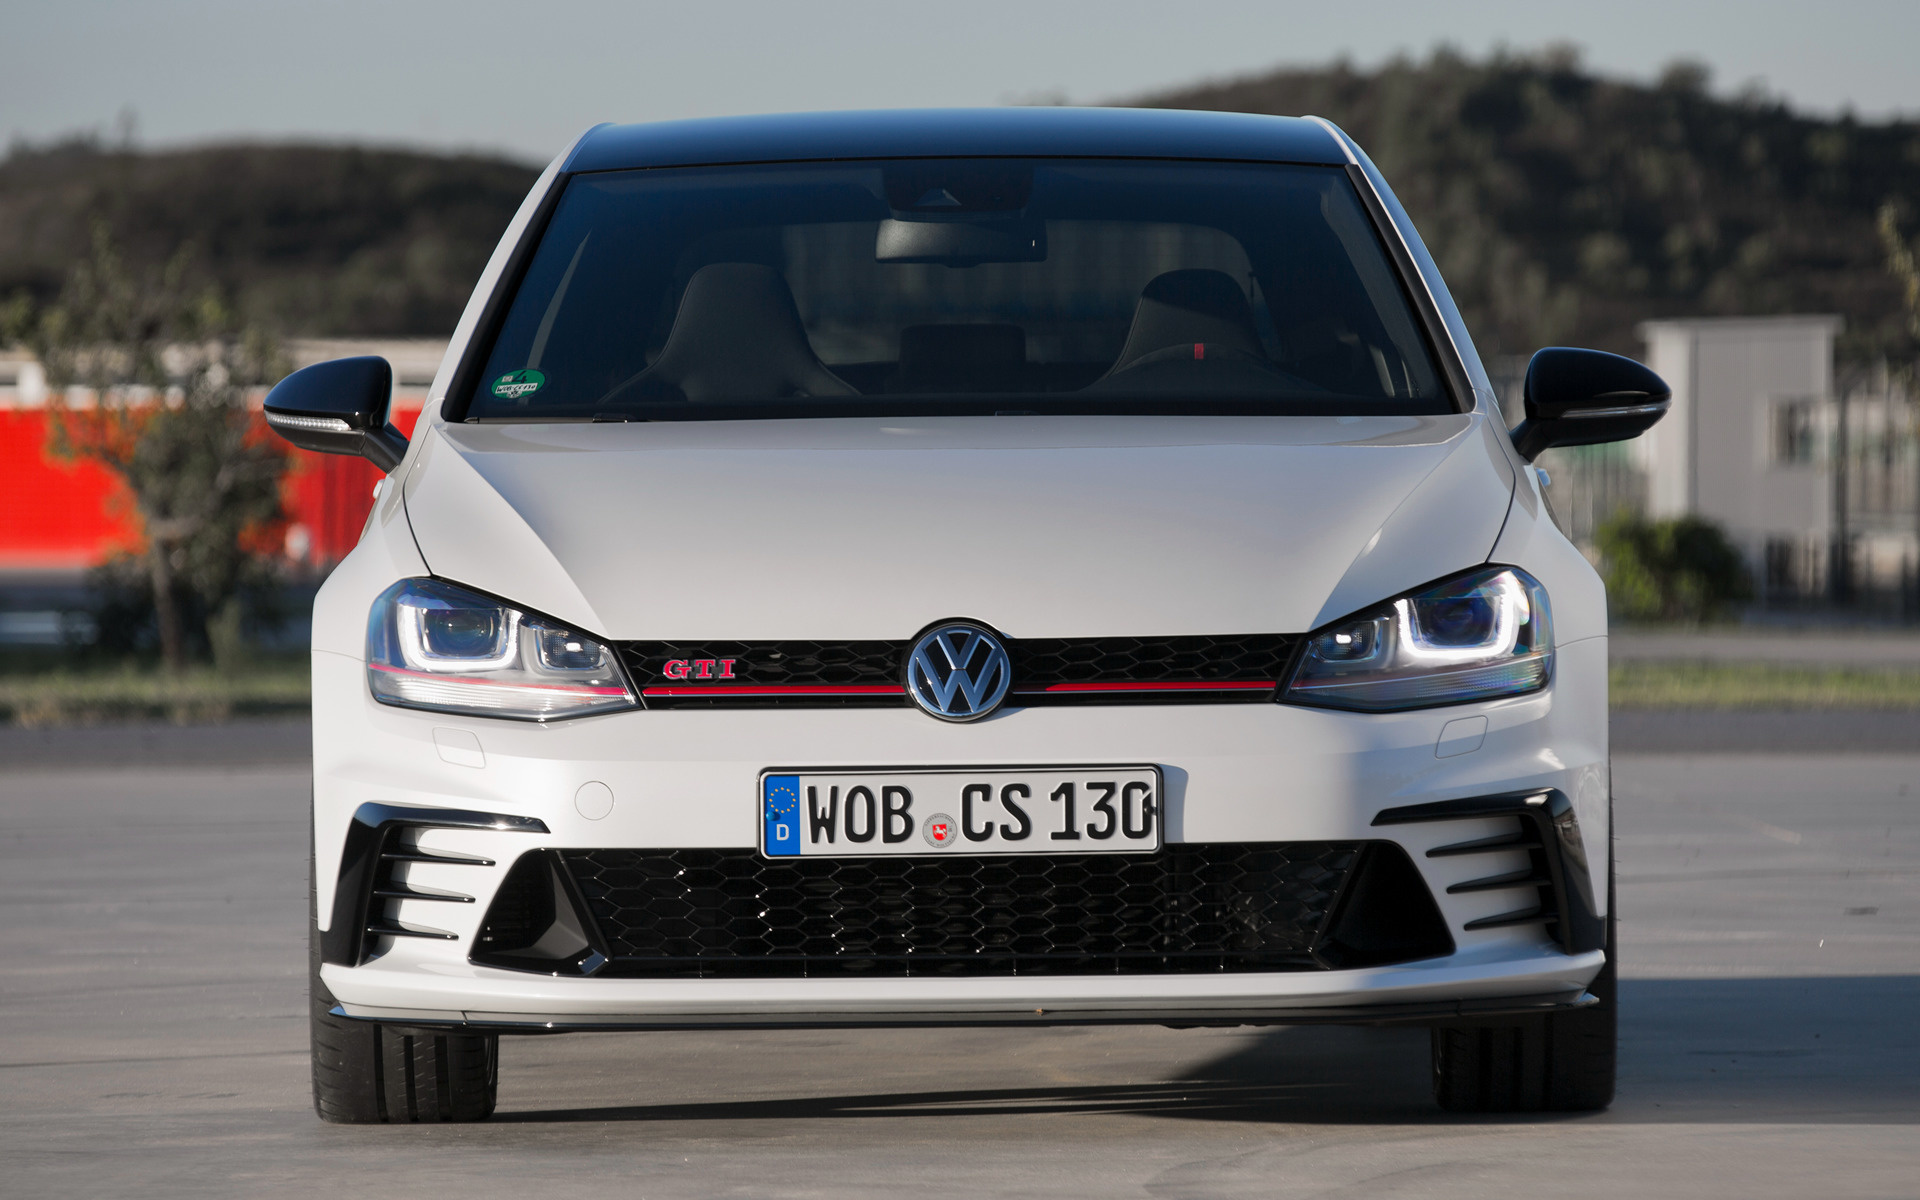 2015 Volkswagen Golf GTI Clubsport 3-door - Wallpapers and HD Images ...